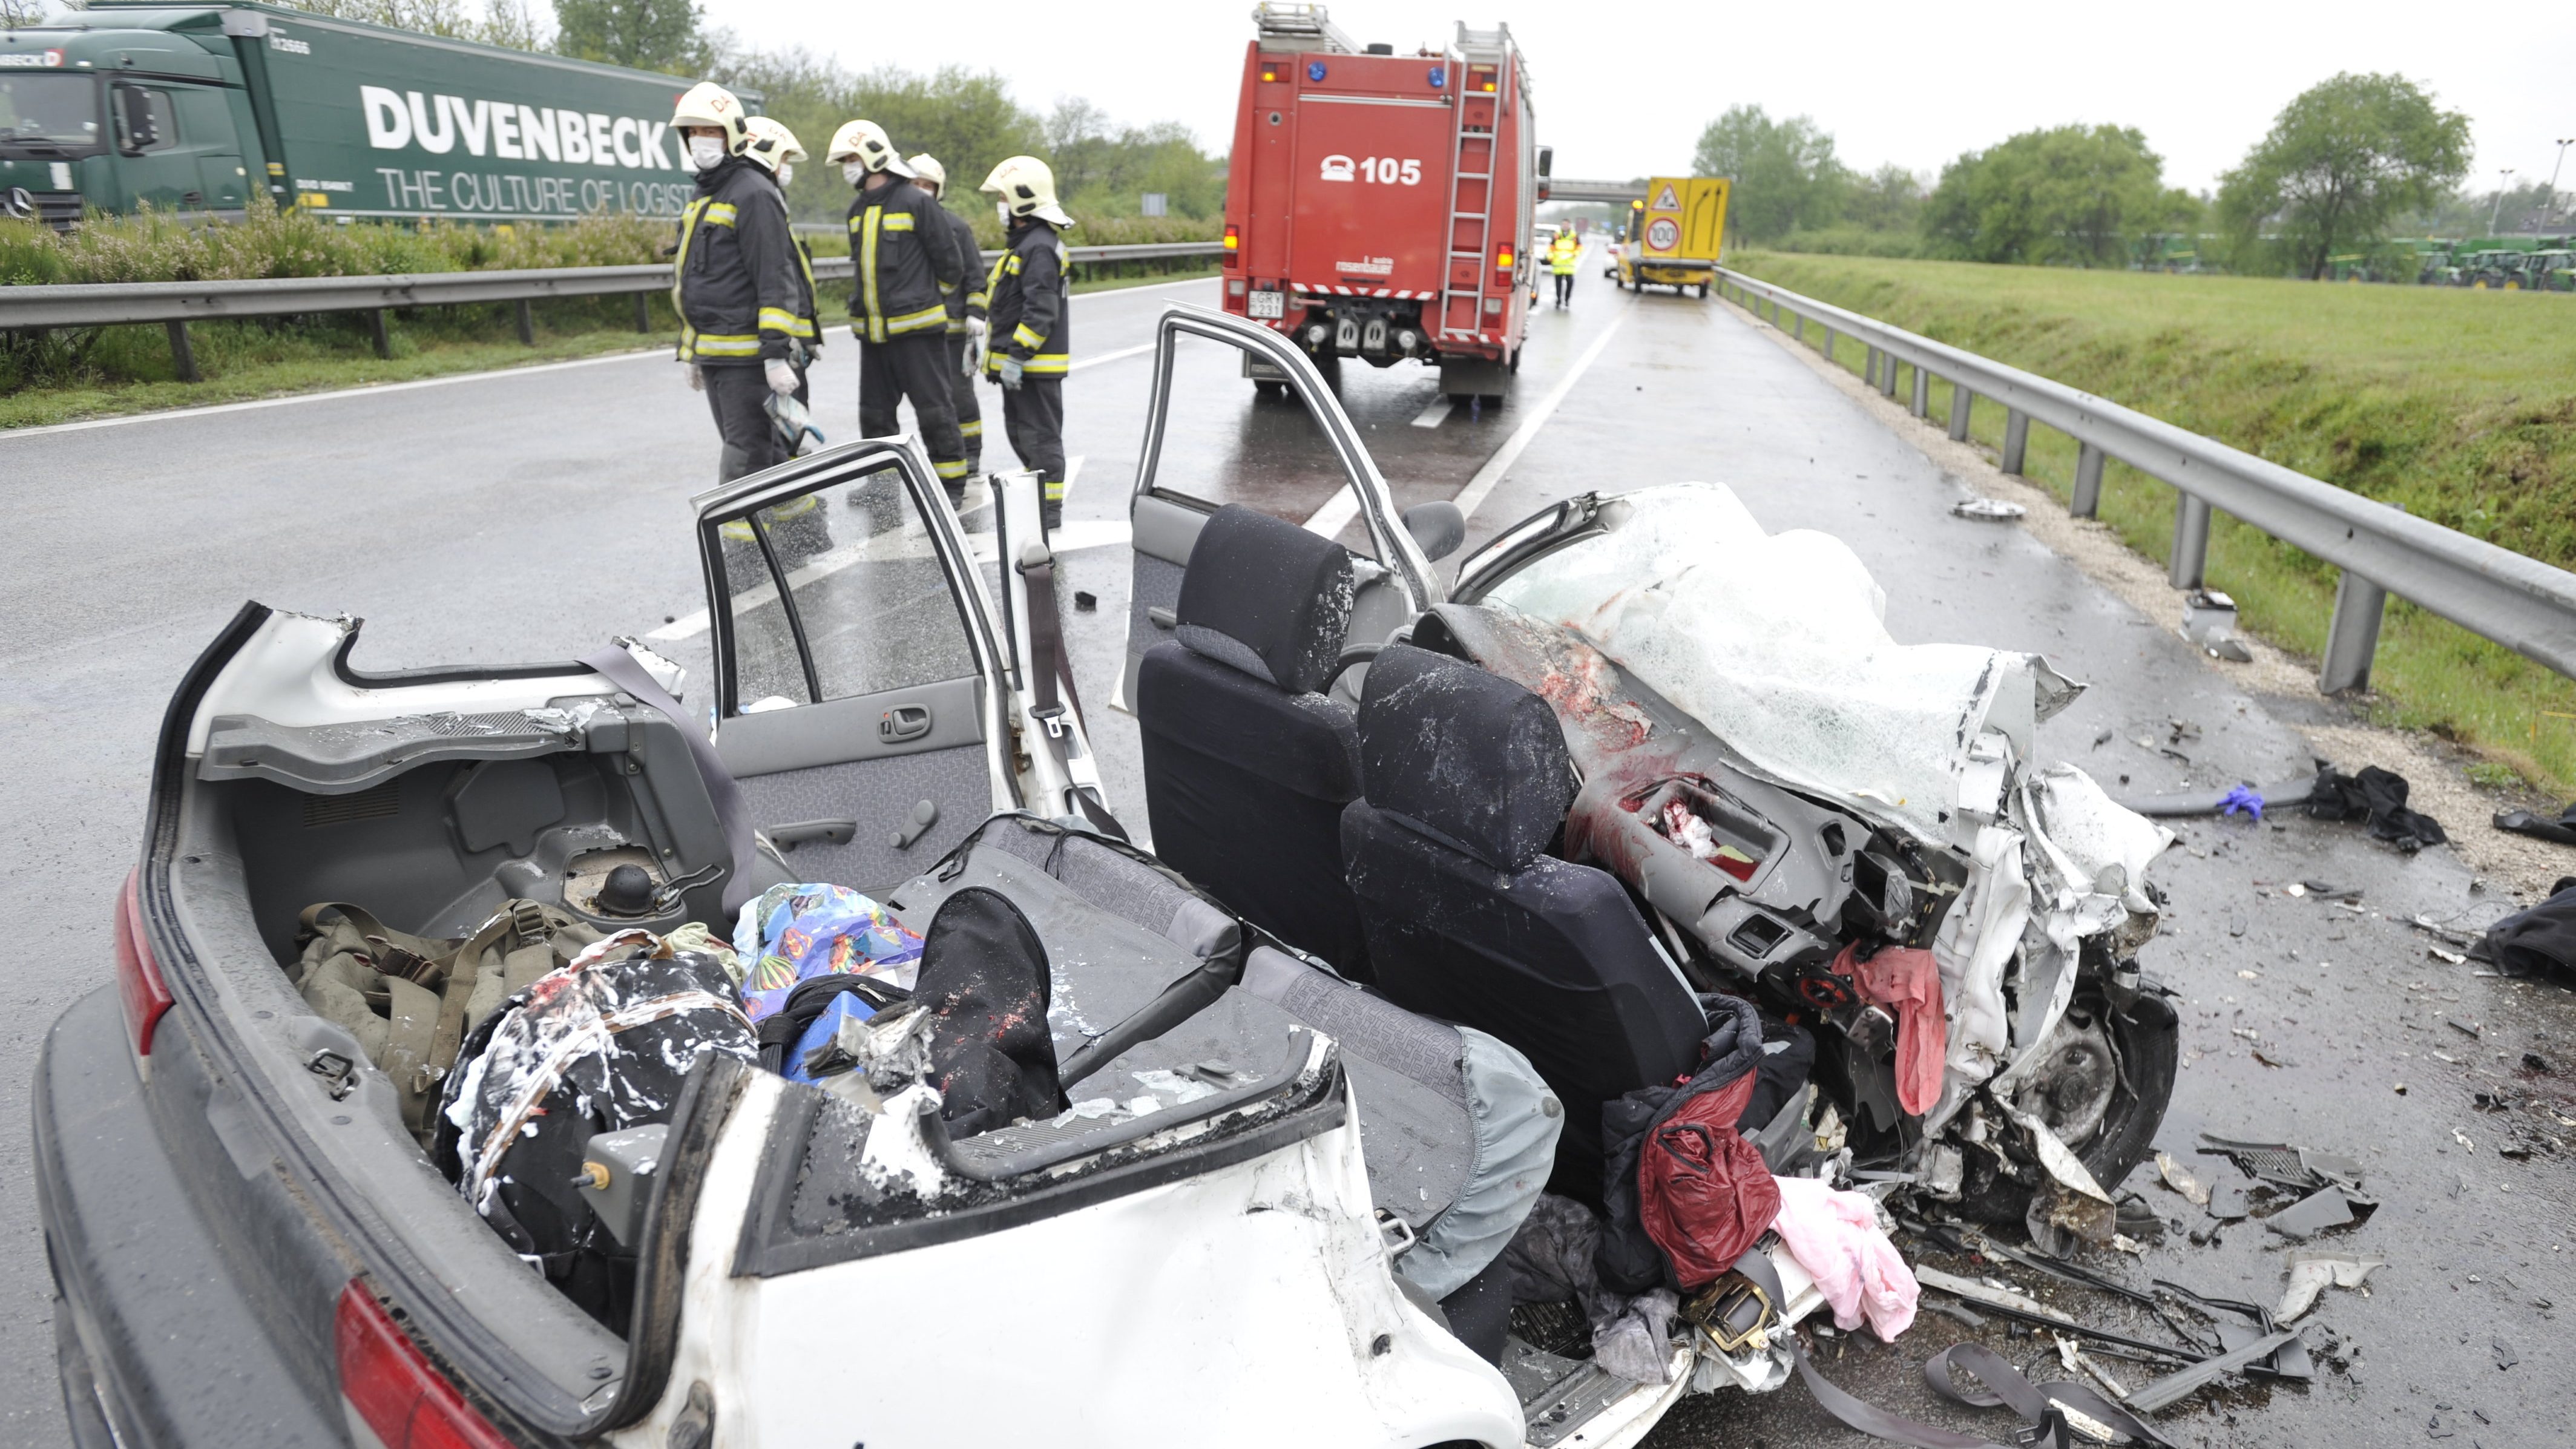 A közútkezelő álló járművébe csapódott egy autó az M5-ösön, egy ember meghalt, négyen megsérültek